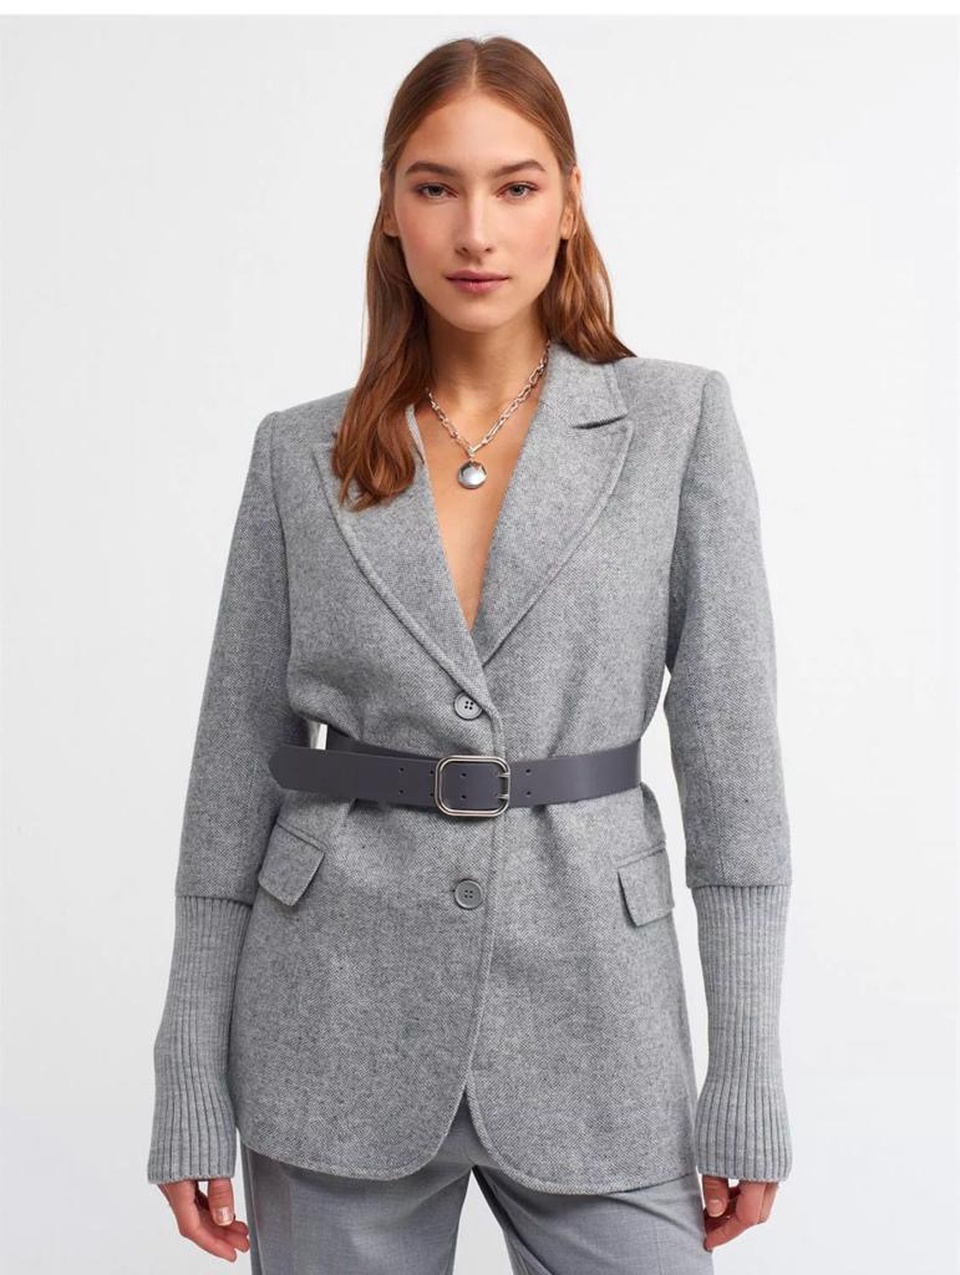 Пиджак - 4 100 ₽, заказать онлайн.